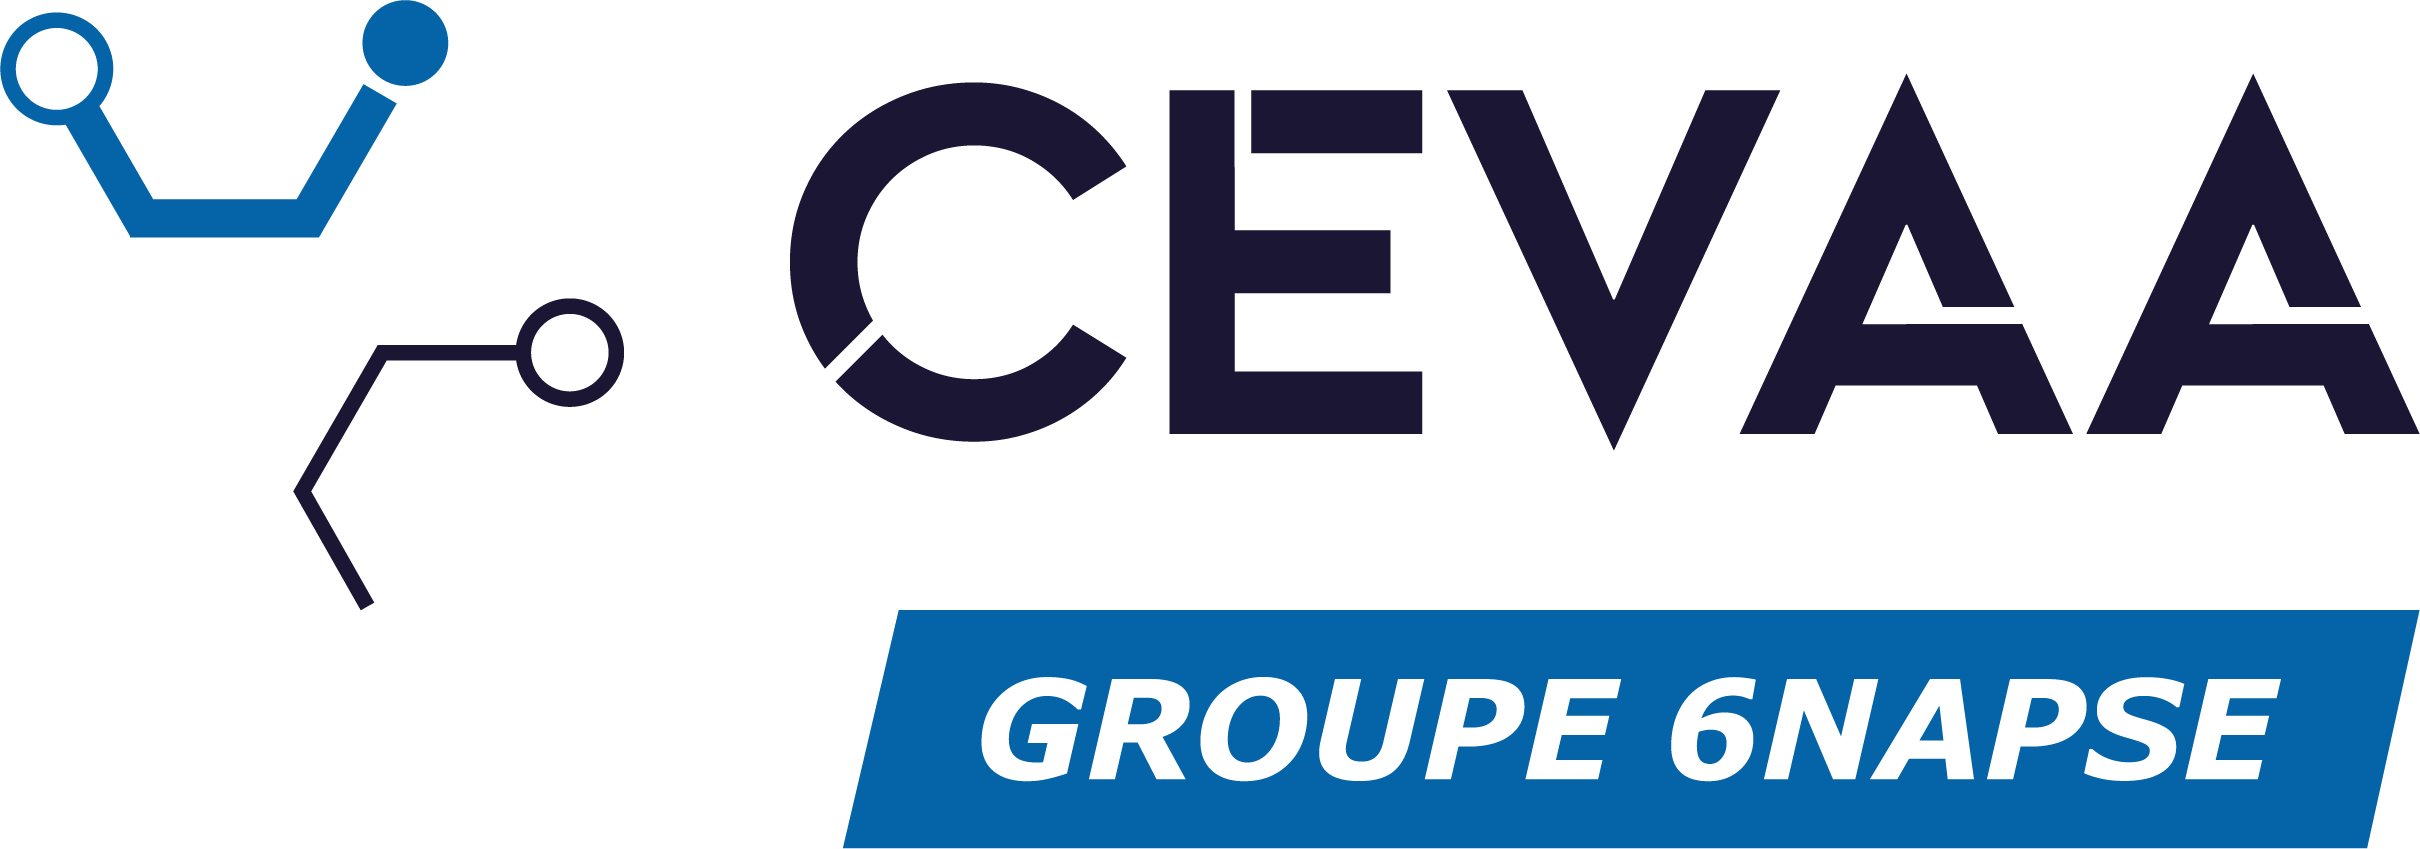 Logo CEVAA